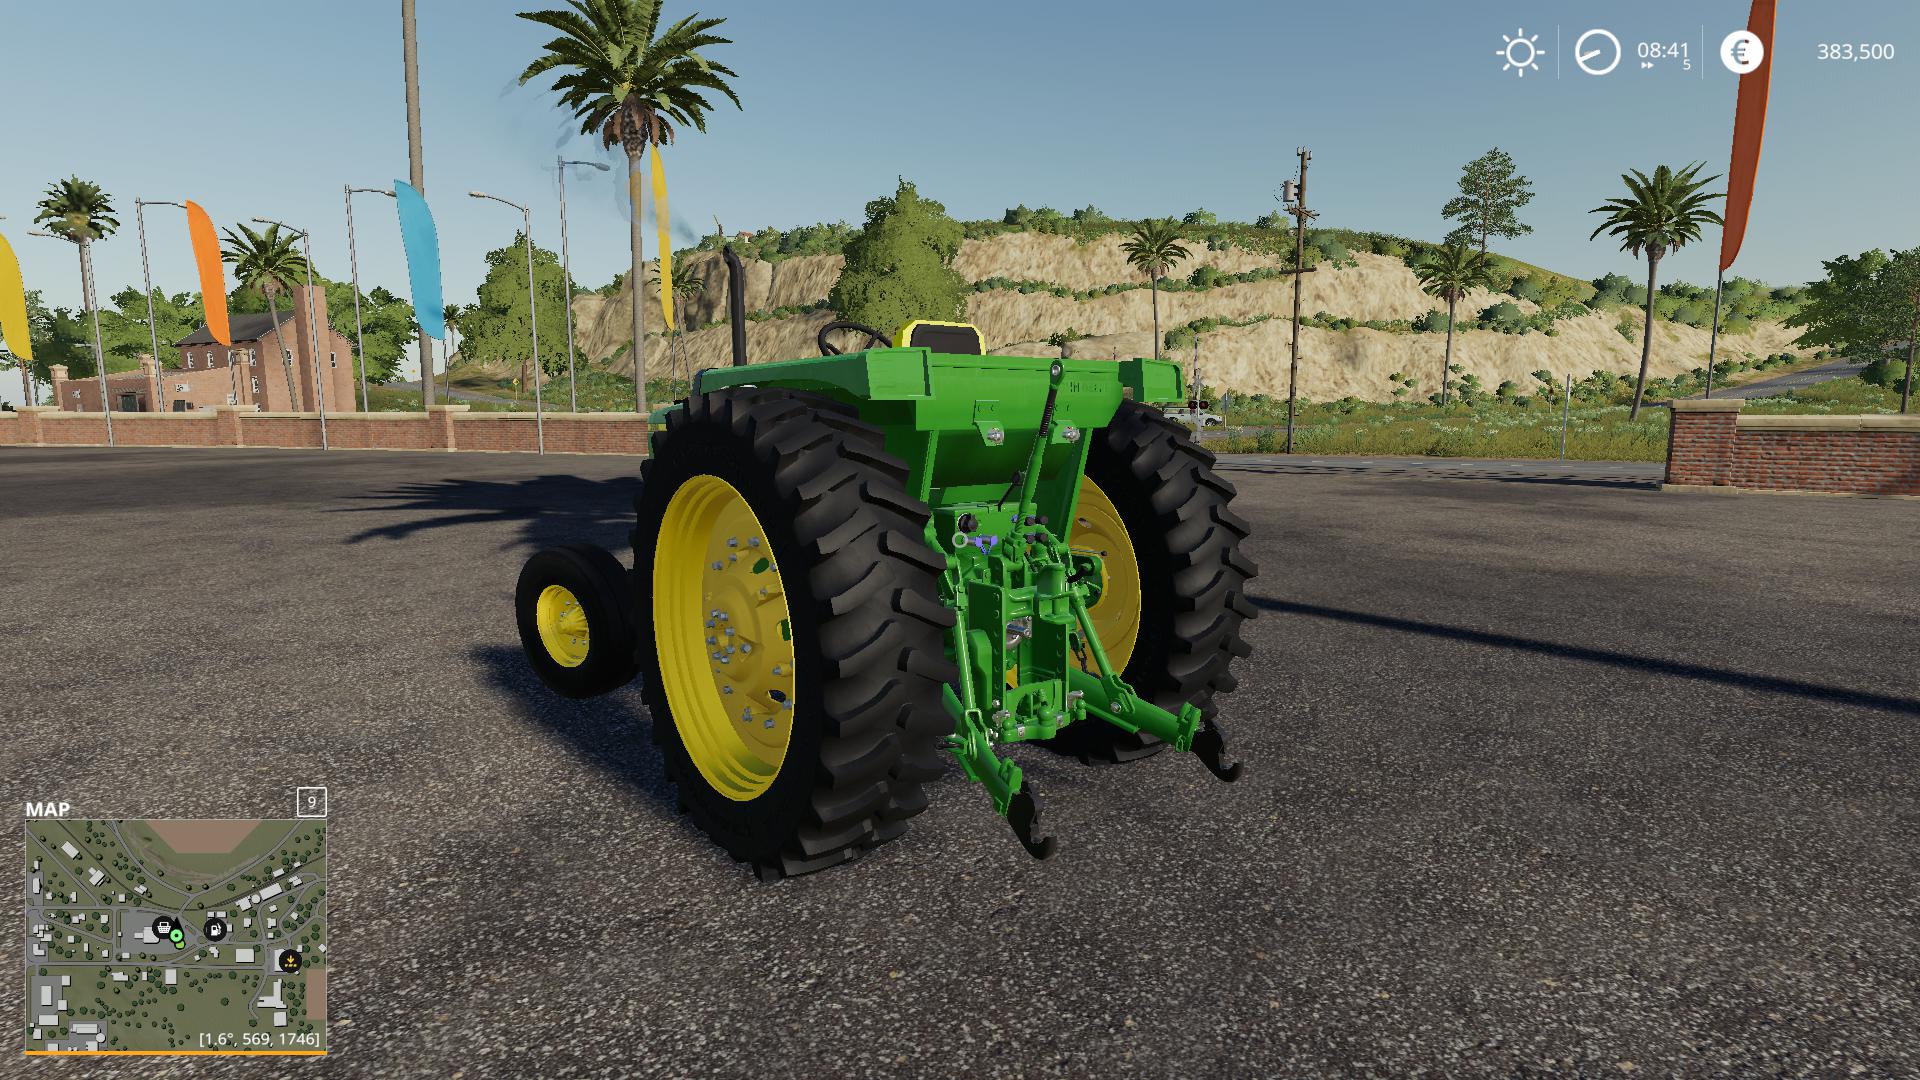 Fs19 John Deere 2950 Tractor V10 Farming Simulator 19 Modsclub 5533